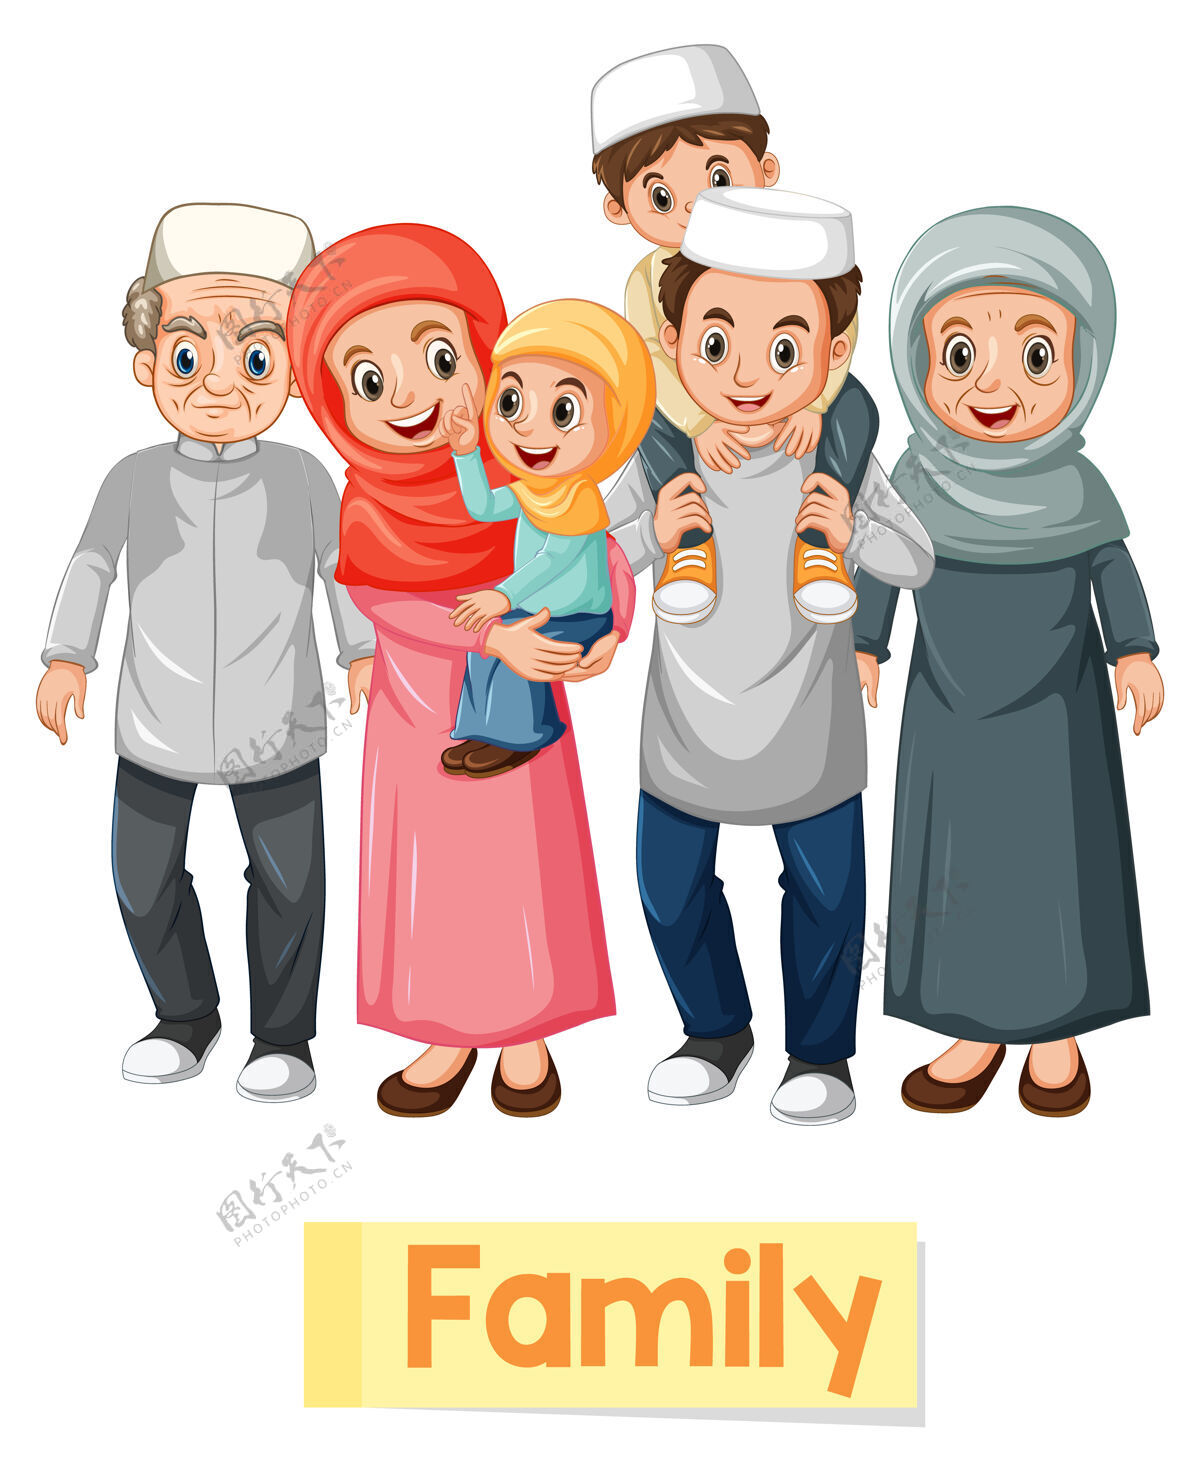 学校穆斯林家庭成员教育英语单词卡乐趣英语人